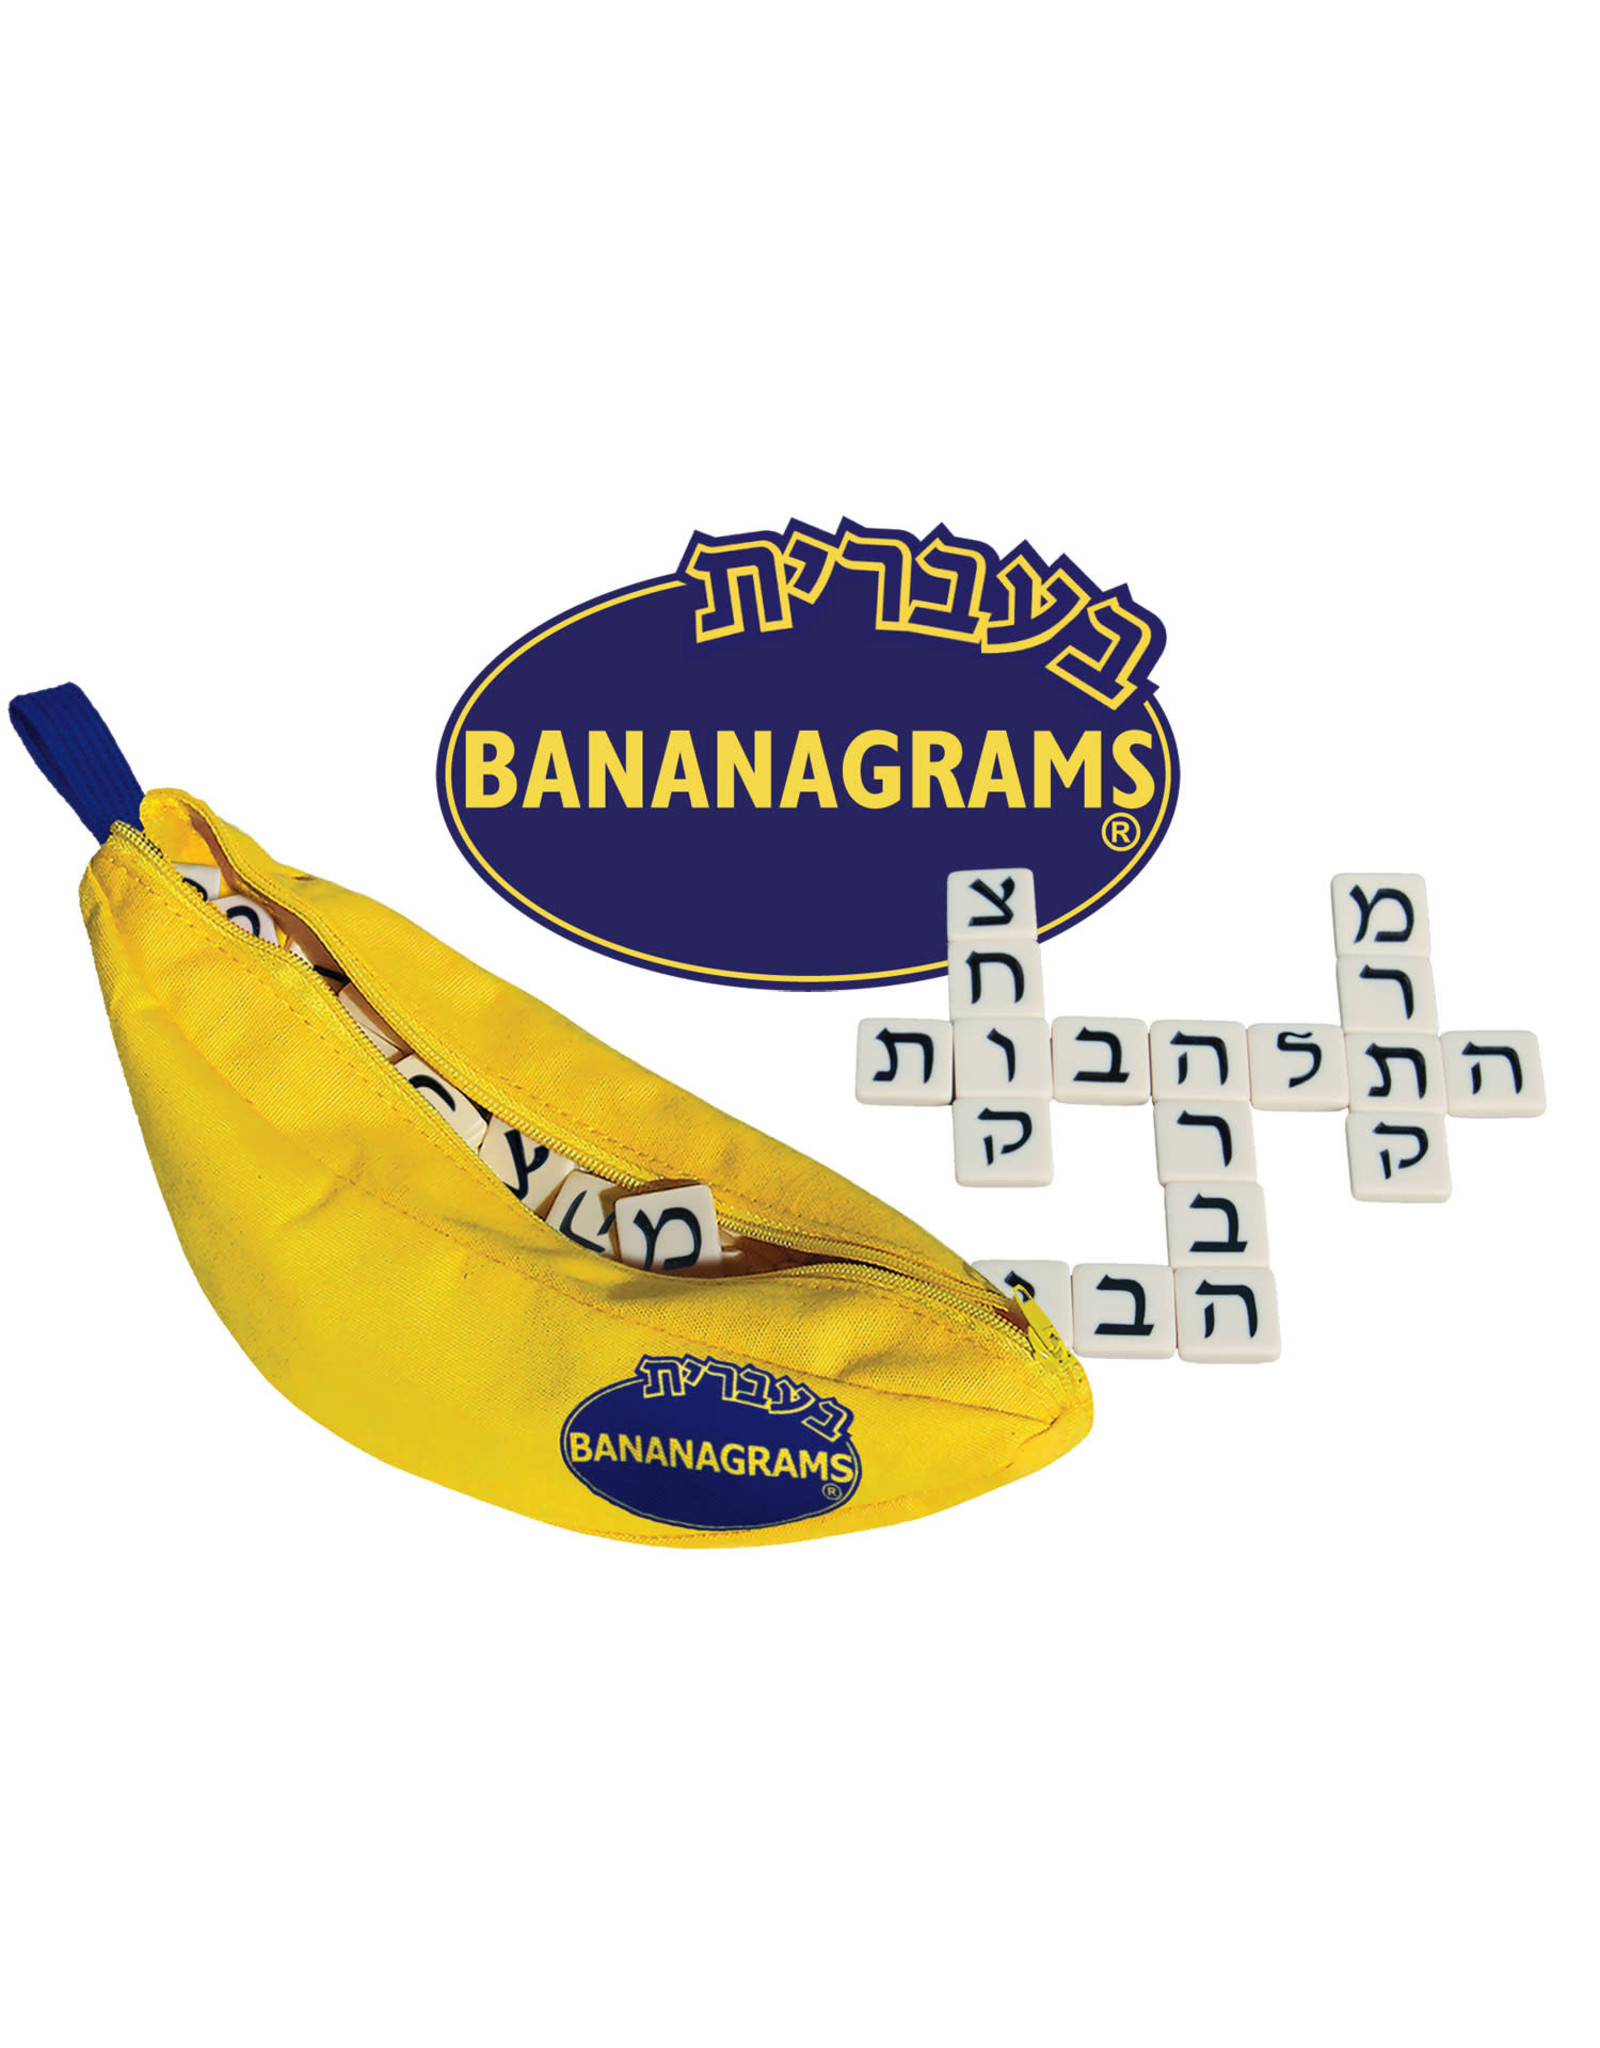 Bananagrams Hebrew Edition